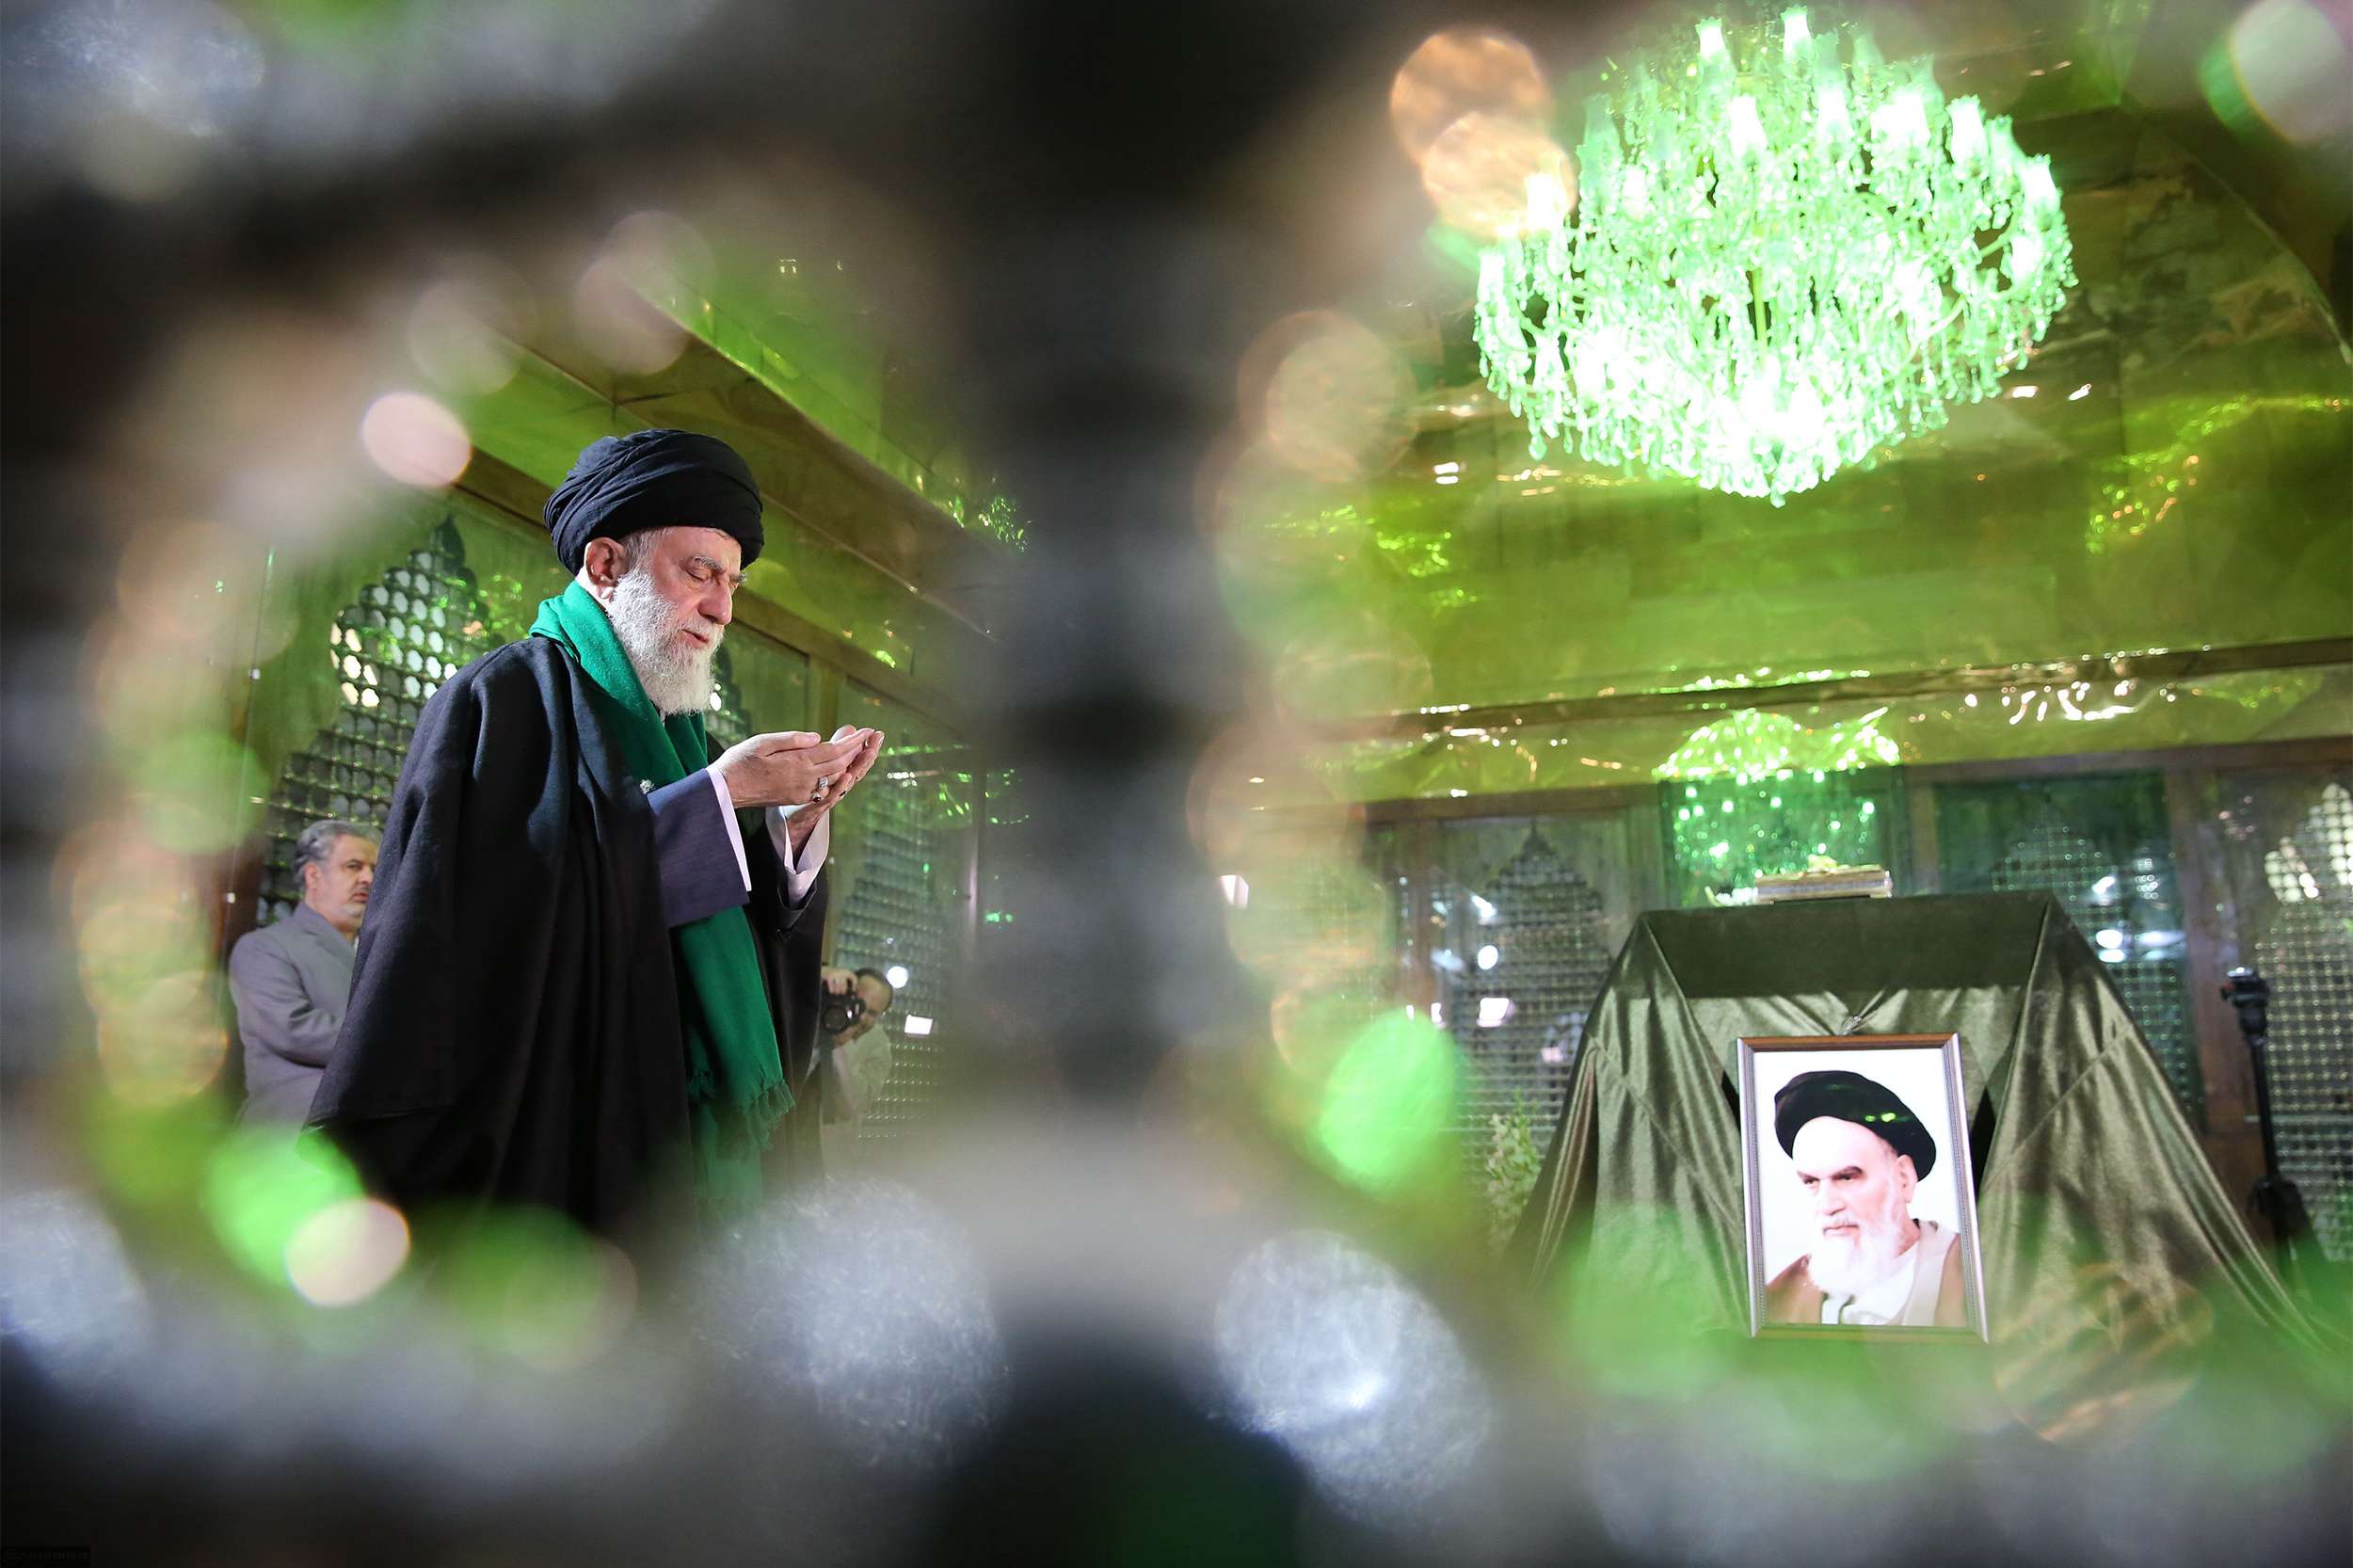 المرشد الأعلى الايراني علي خامنئي يزور قبر الخميني مؤسس الجمهورية الاسلامية في إيران